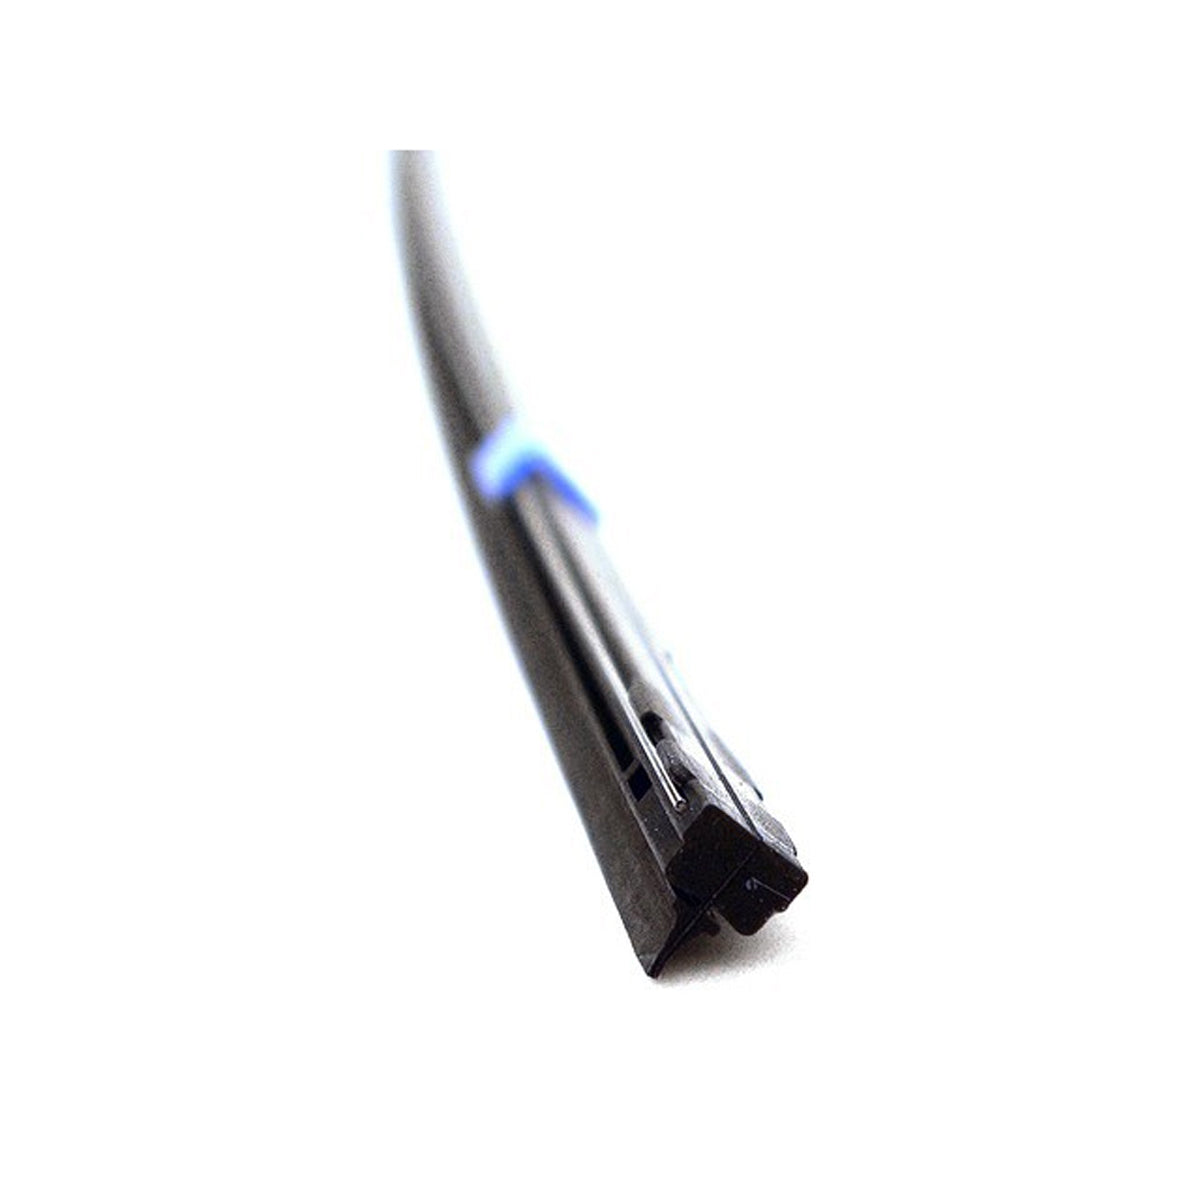 PIAA SILICONE WIPER REFILL for Radix & Aero Vogue Blade ( 28" ) ( 8mm ) (Barcode: 722935940700 )